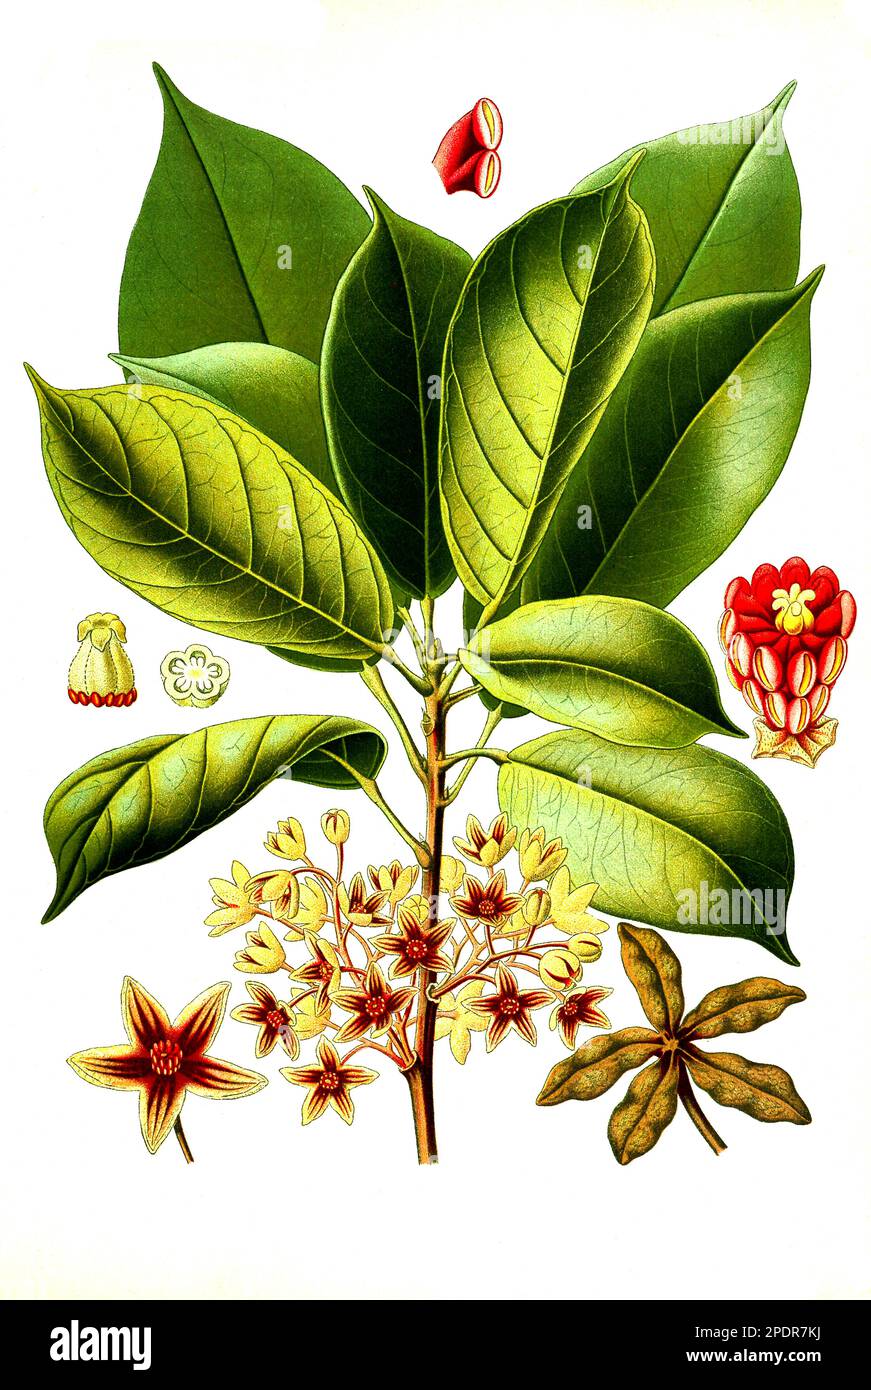 Heilpflanze, Cola acuminata, Kolabaum, Kolanußbaum, Historisch, digital restaurierte Reproduktion von einer Vorlage aus dem 18. Jahrhundert Stock Photo